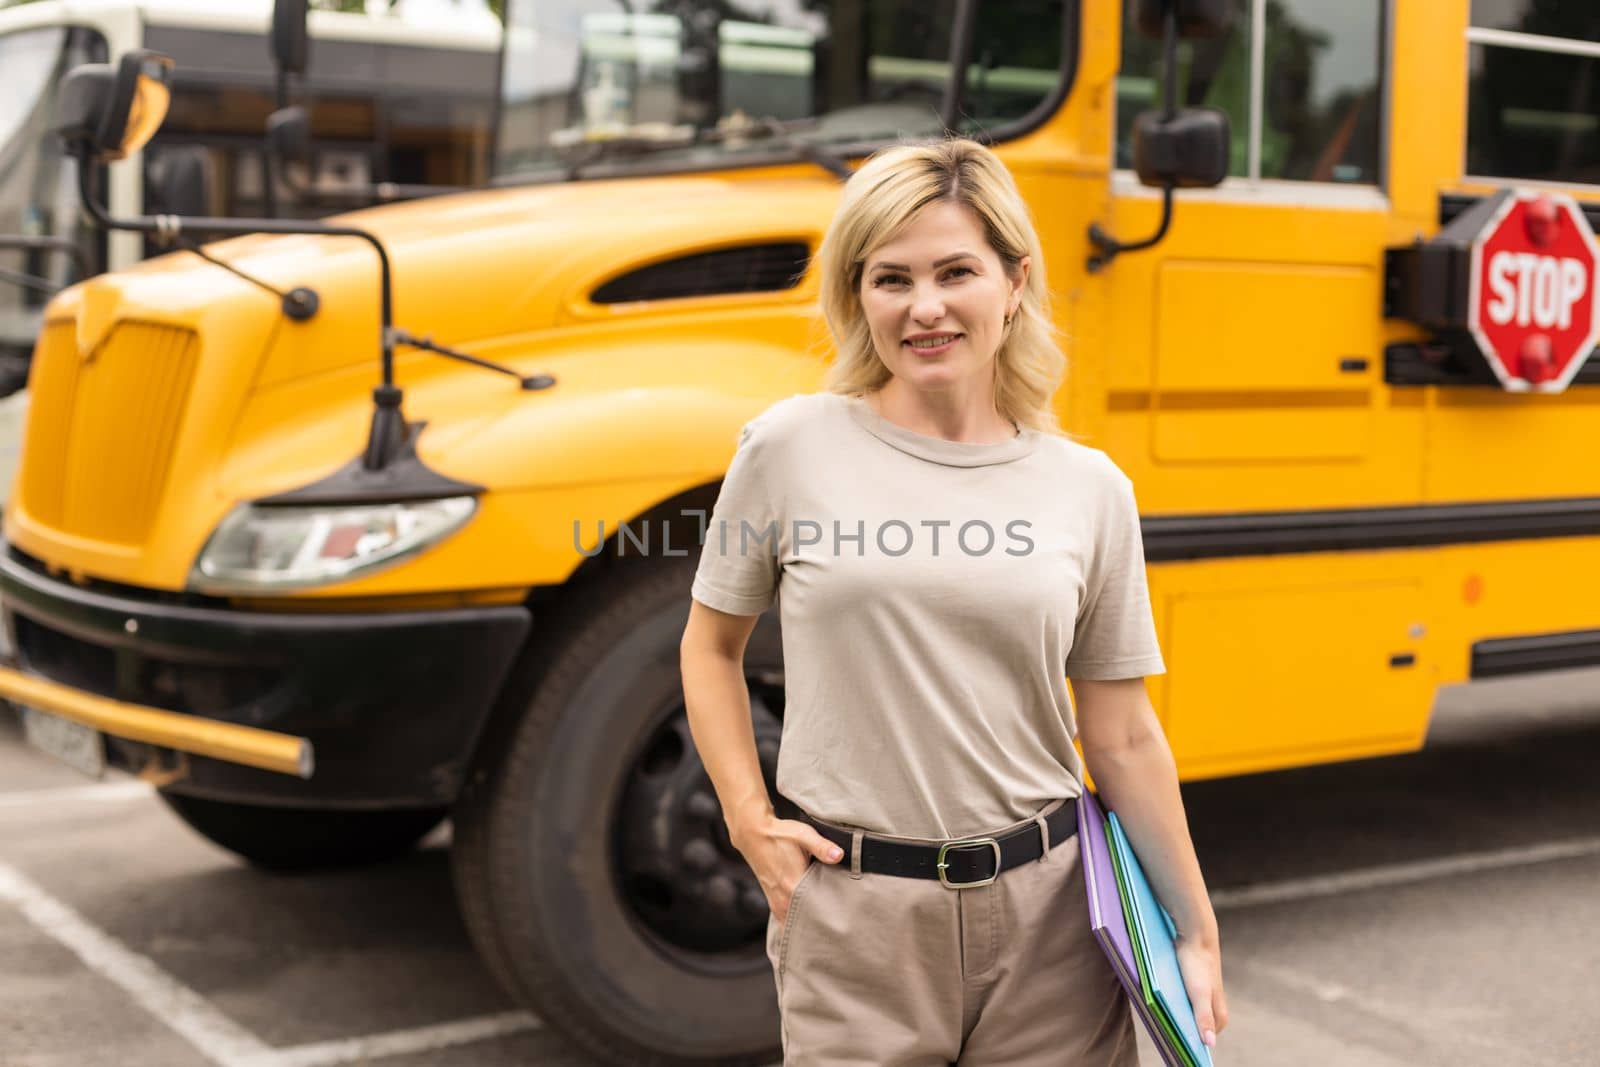 a woman near a school bus by Andelov13